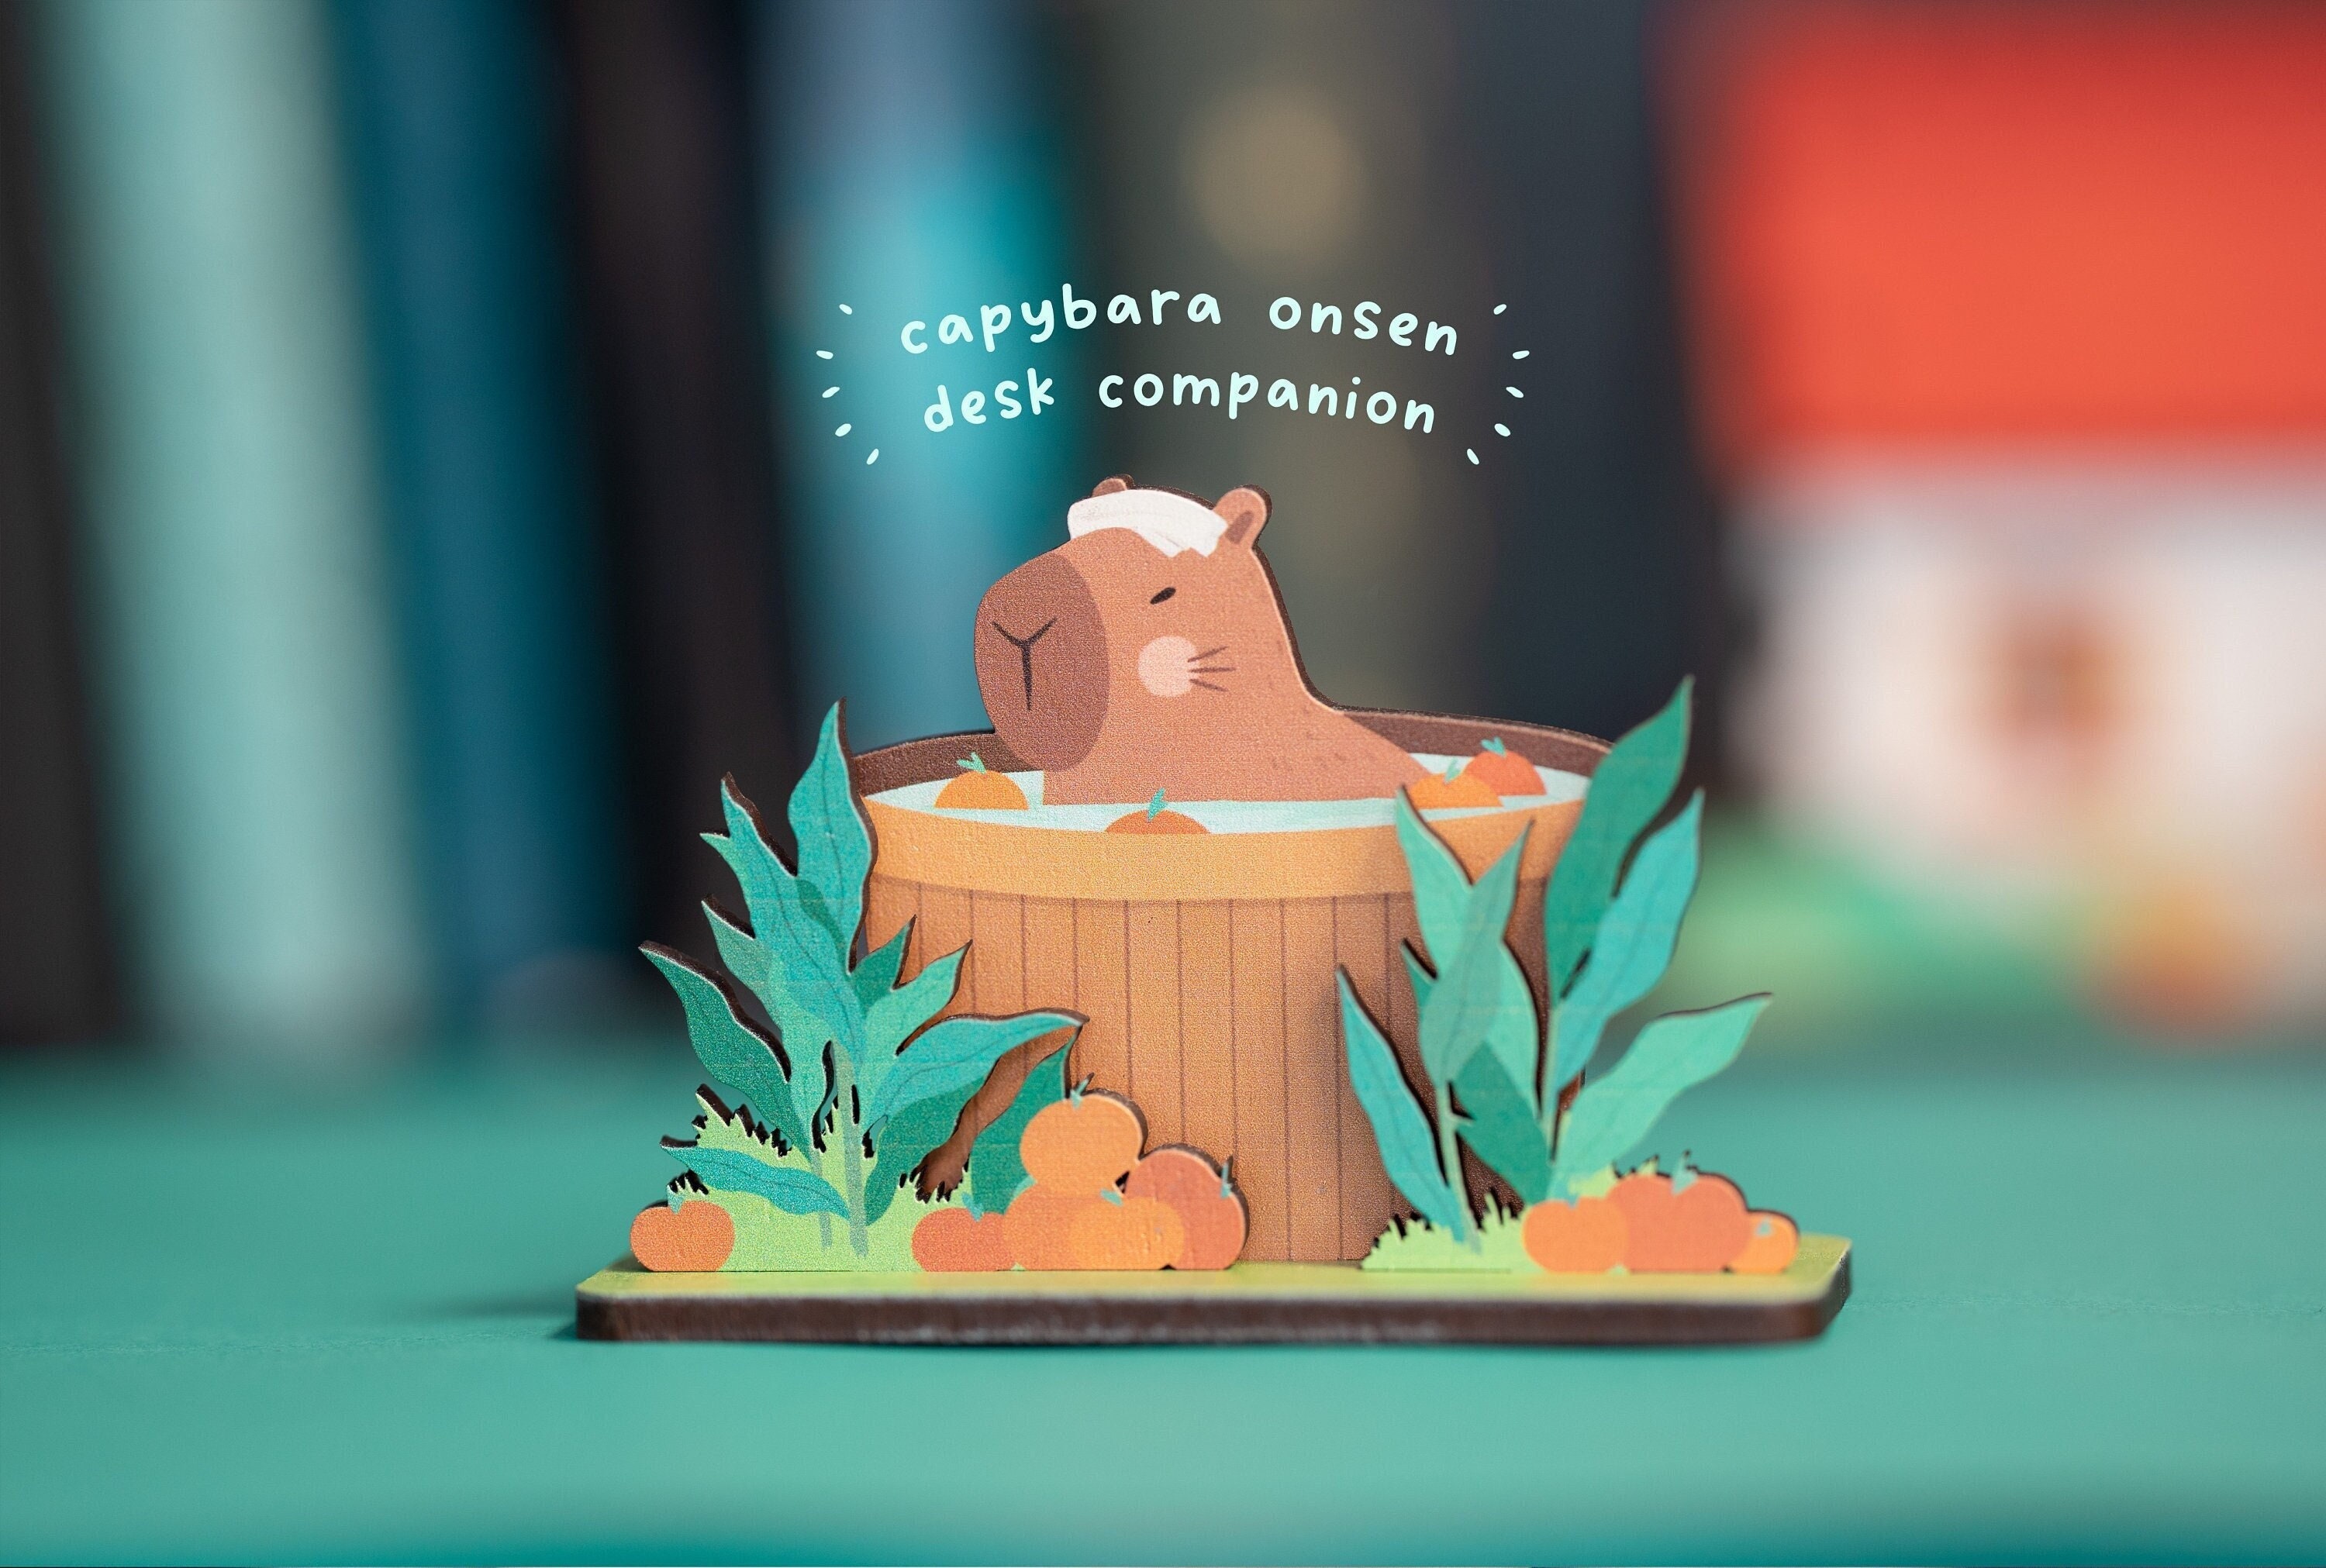 Beedozo Capybara Spielzeug Plüsch, Kawaii Plüschtiere Capybara Stofftier